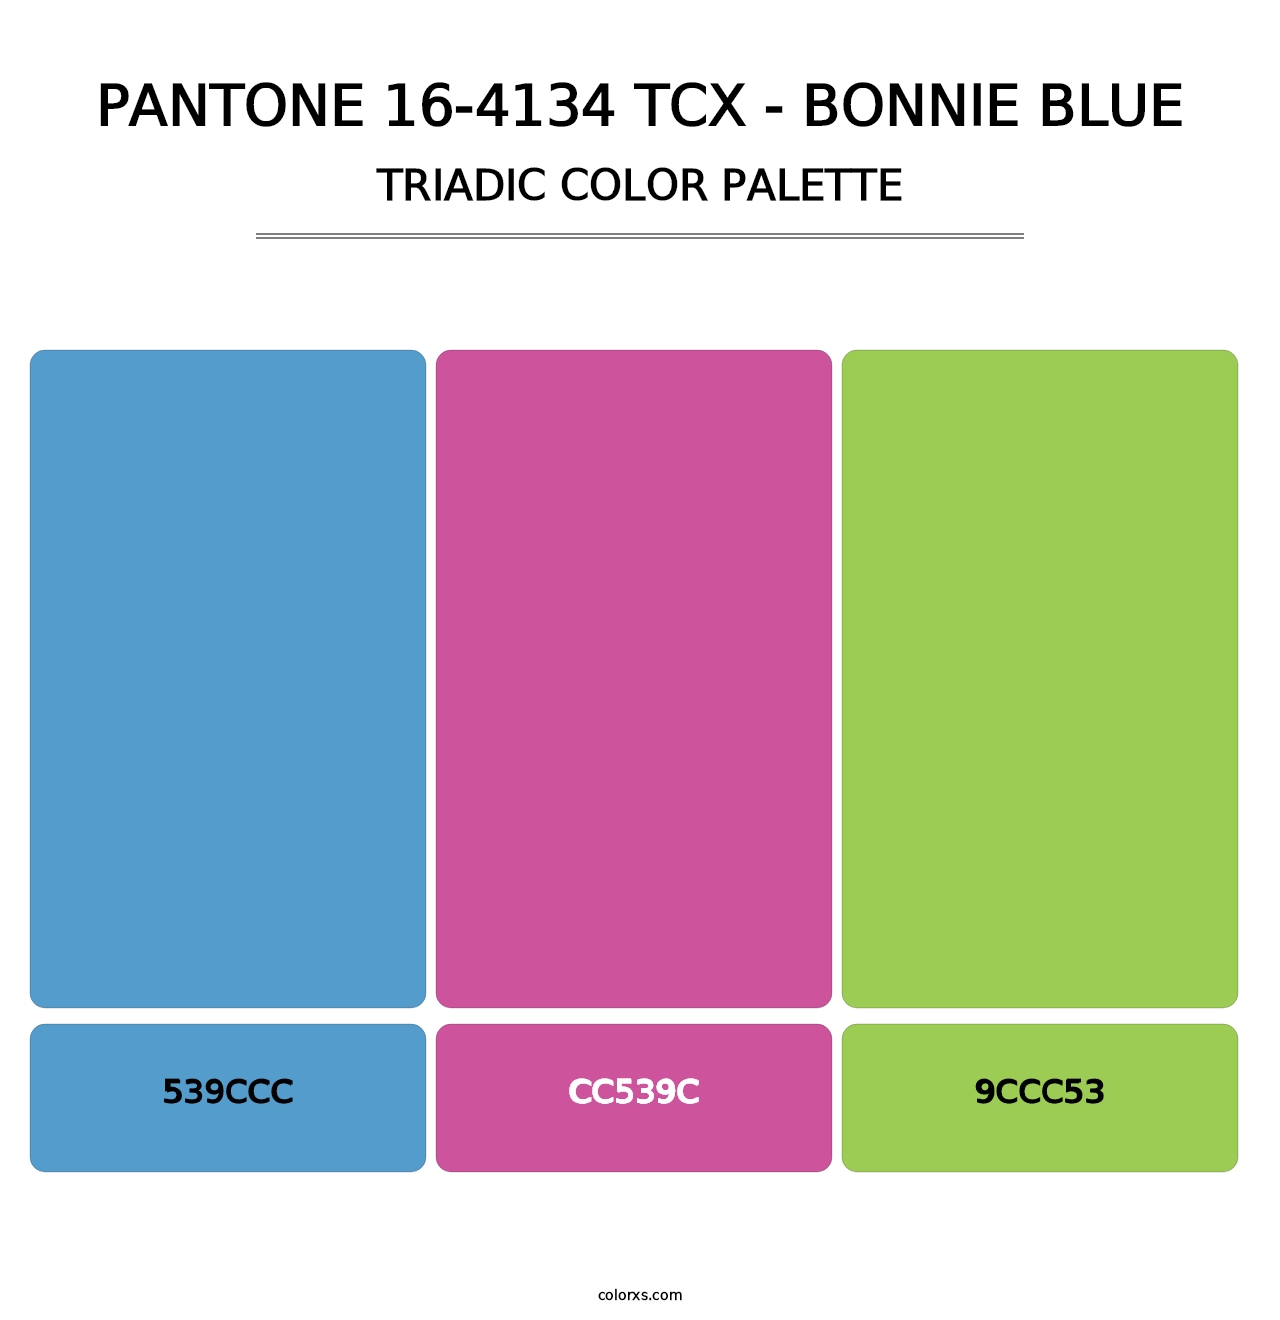 PANTONE 16-4134 TCX - Bonnie Blue - Triadic Color Palette